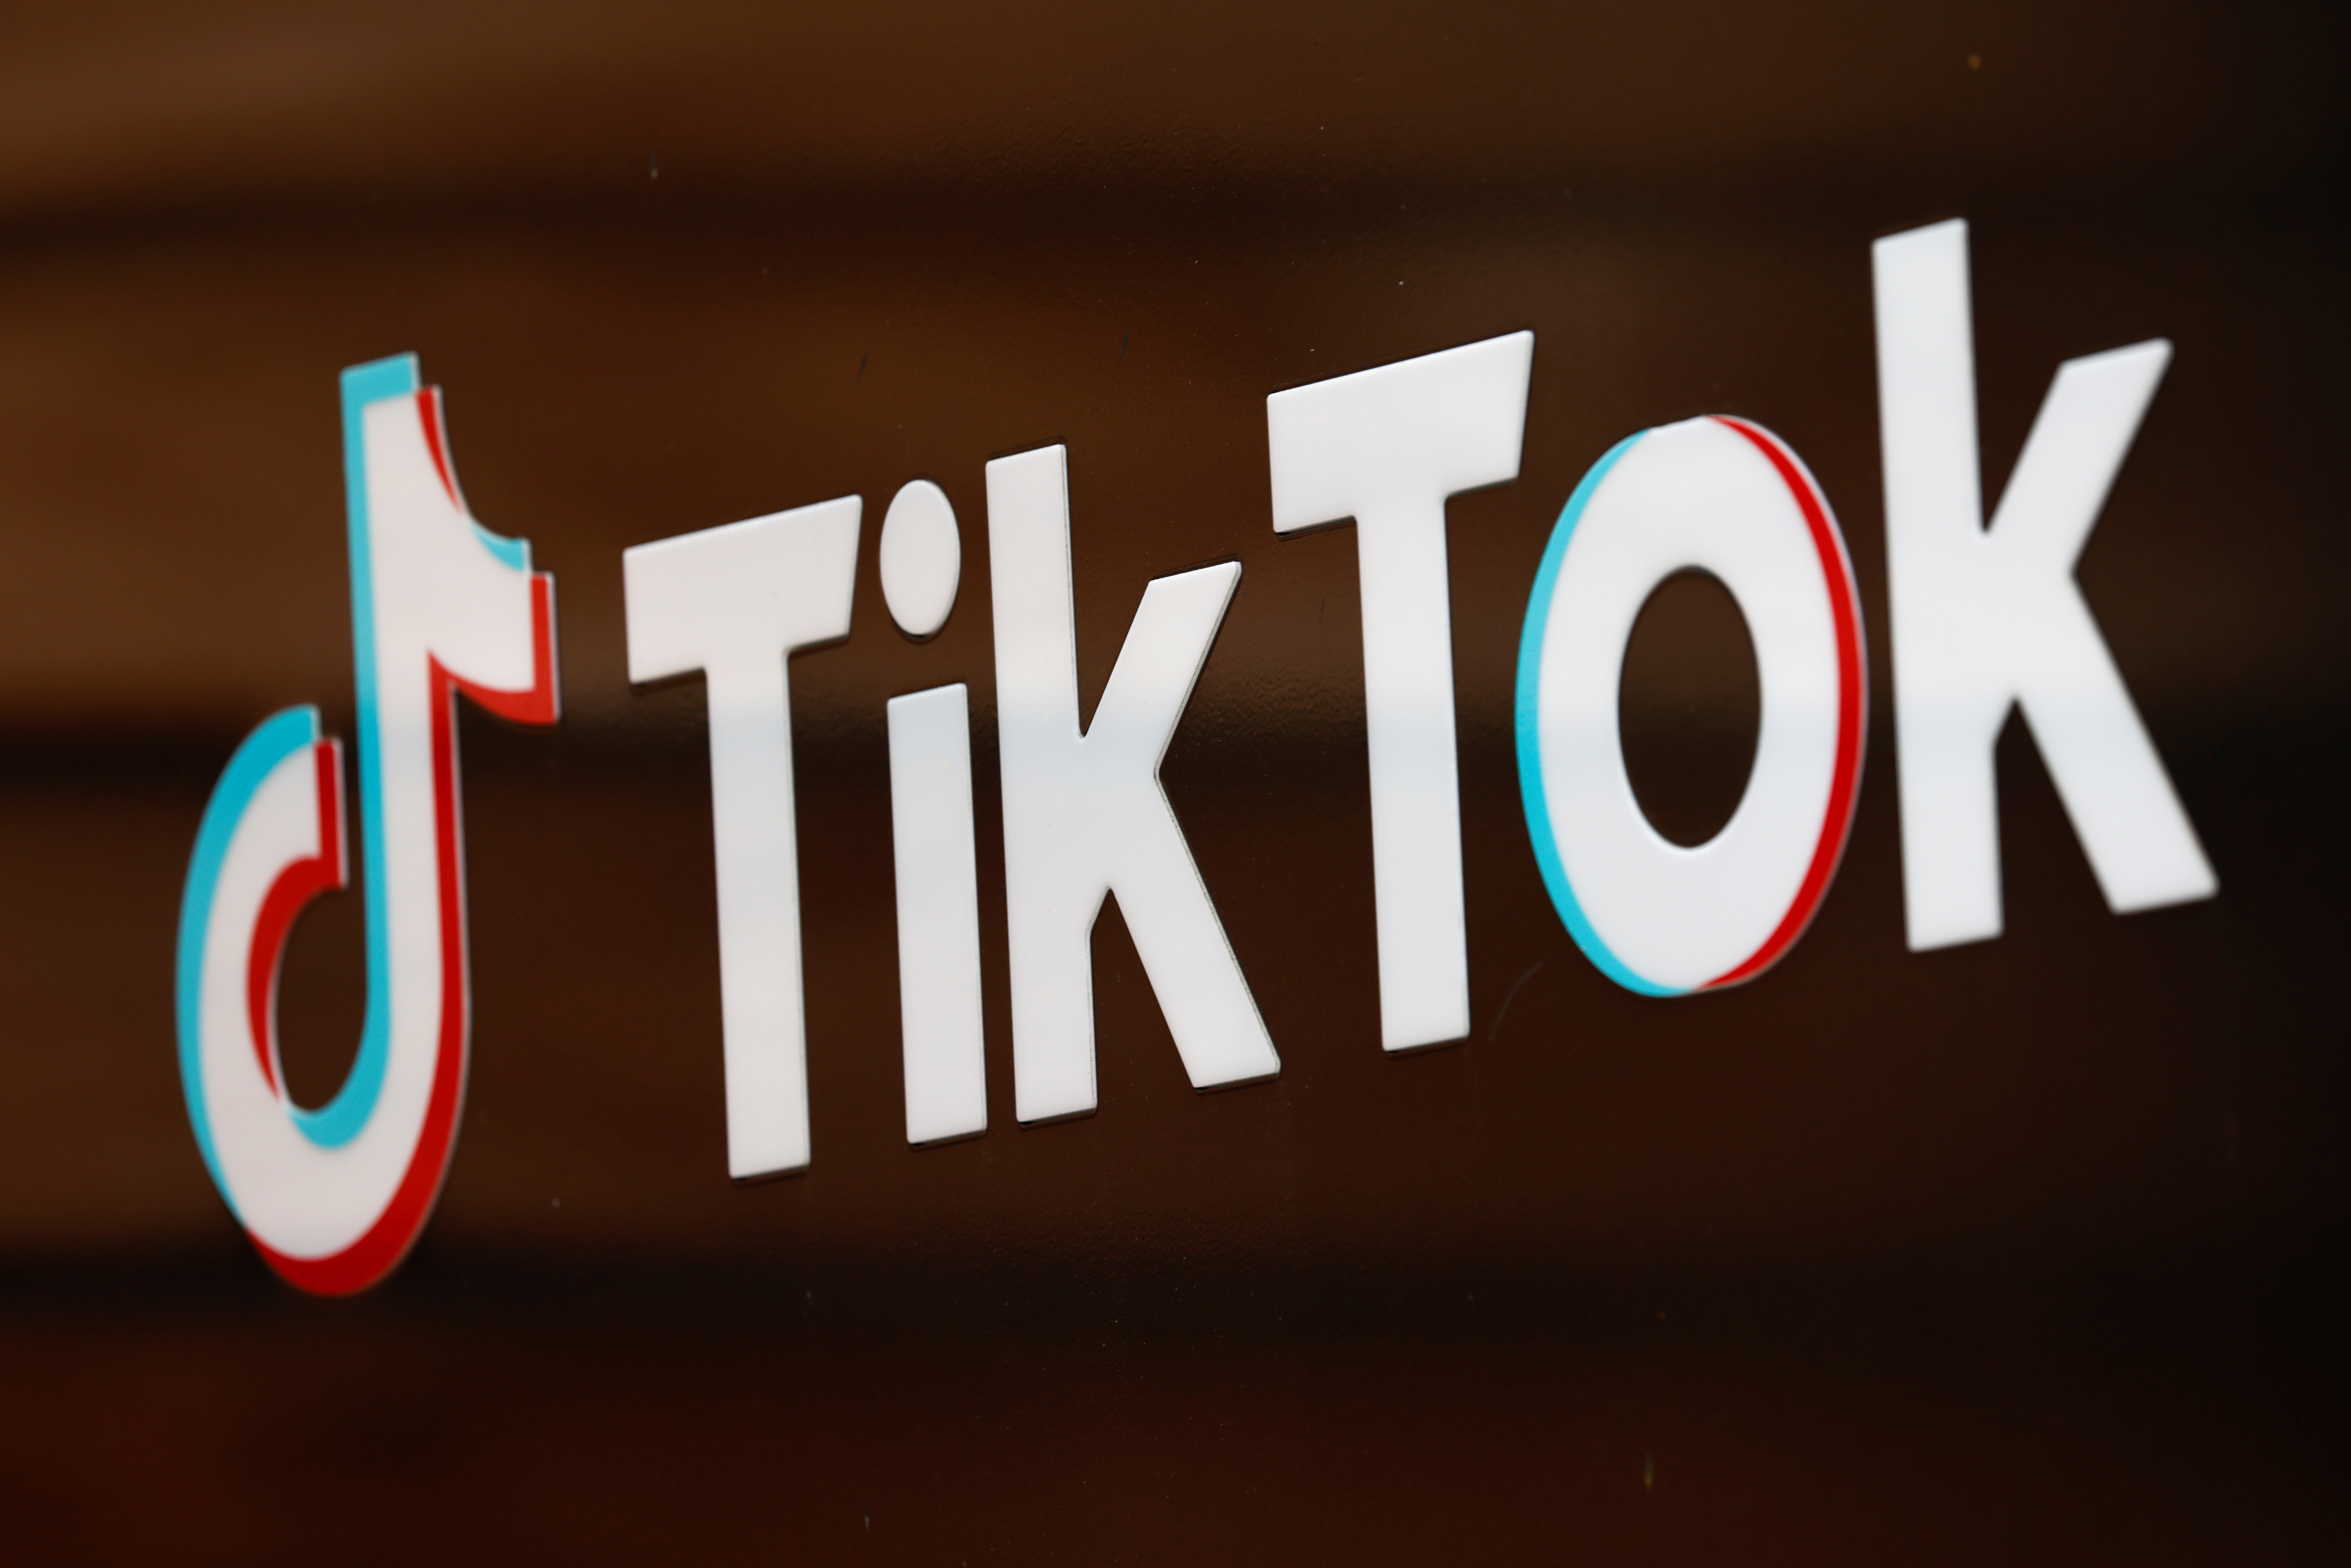 TikTok Announces Sounds For Business